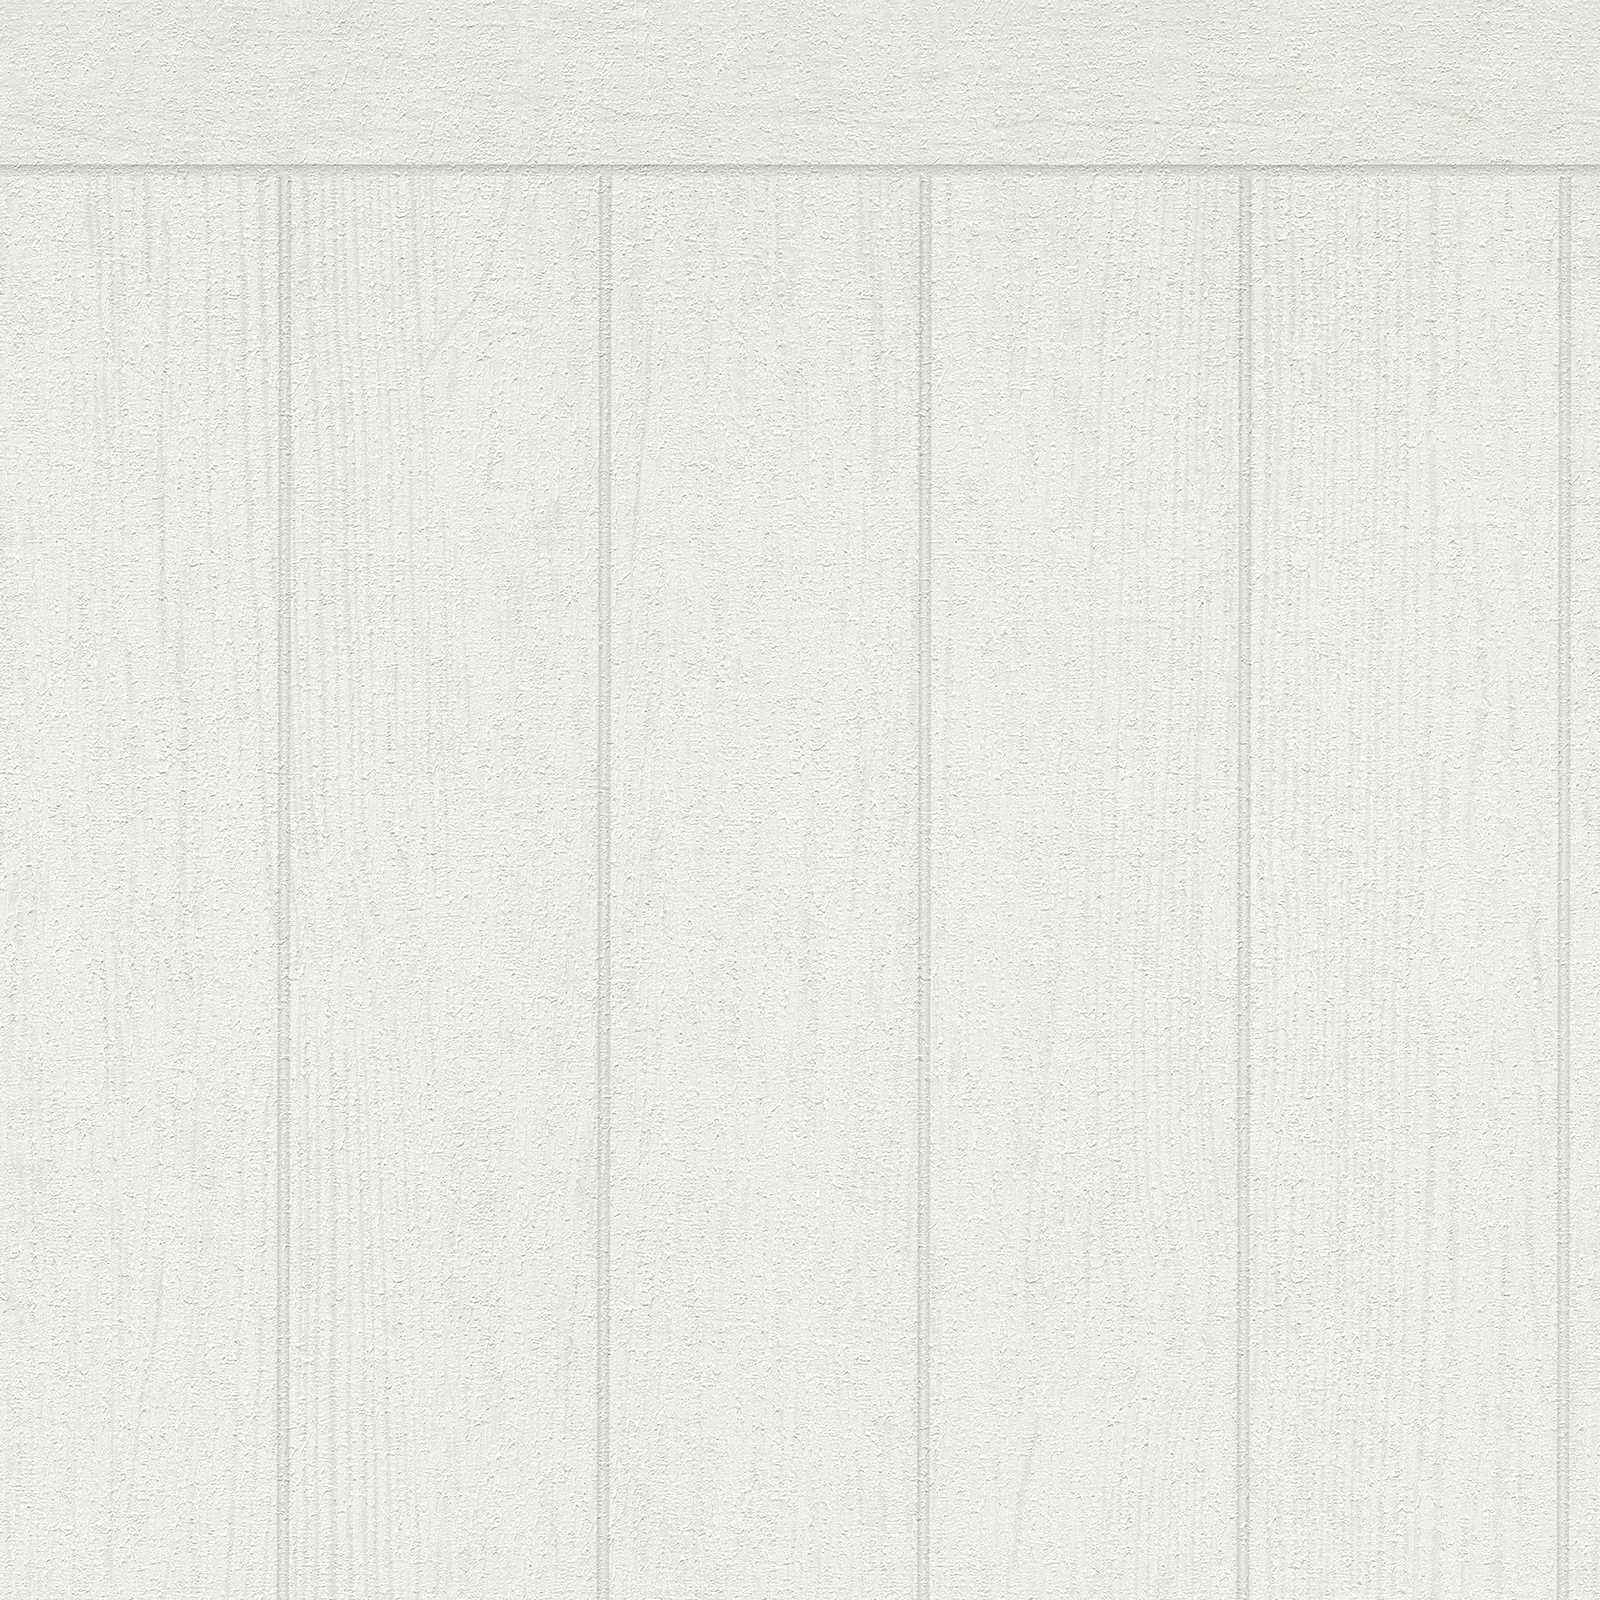 Vlies wandpaneel in houten balkenlook - wit, crème
